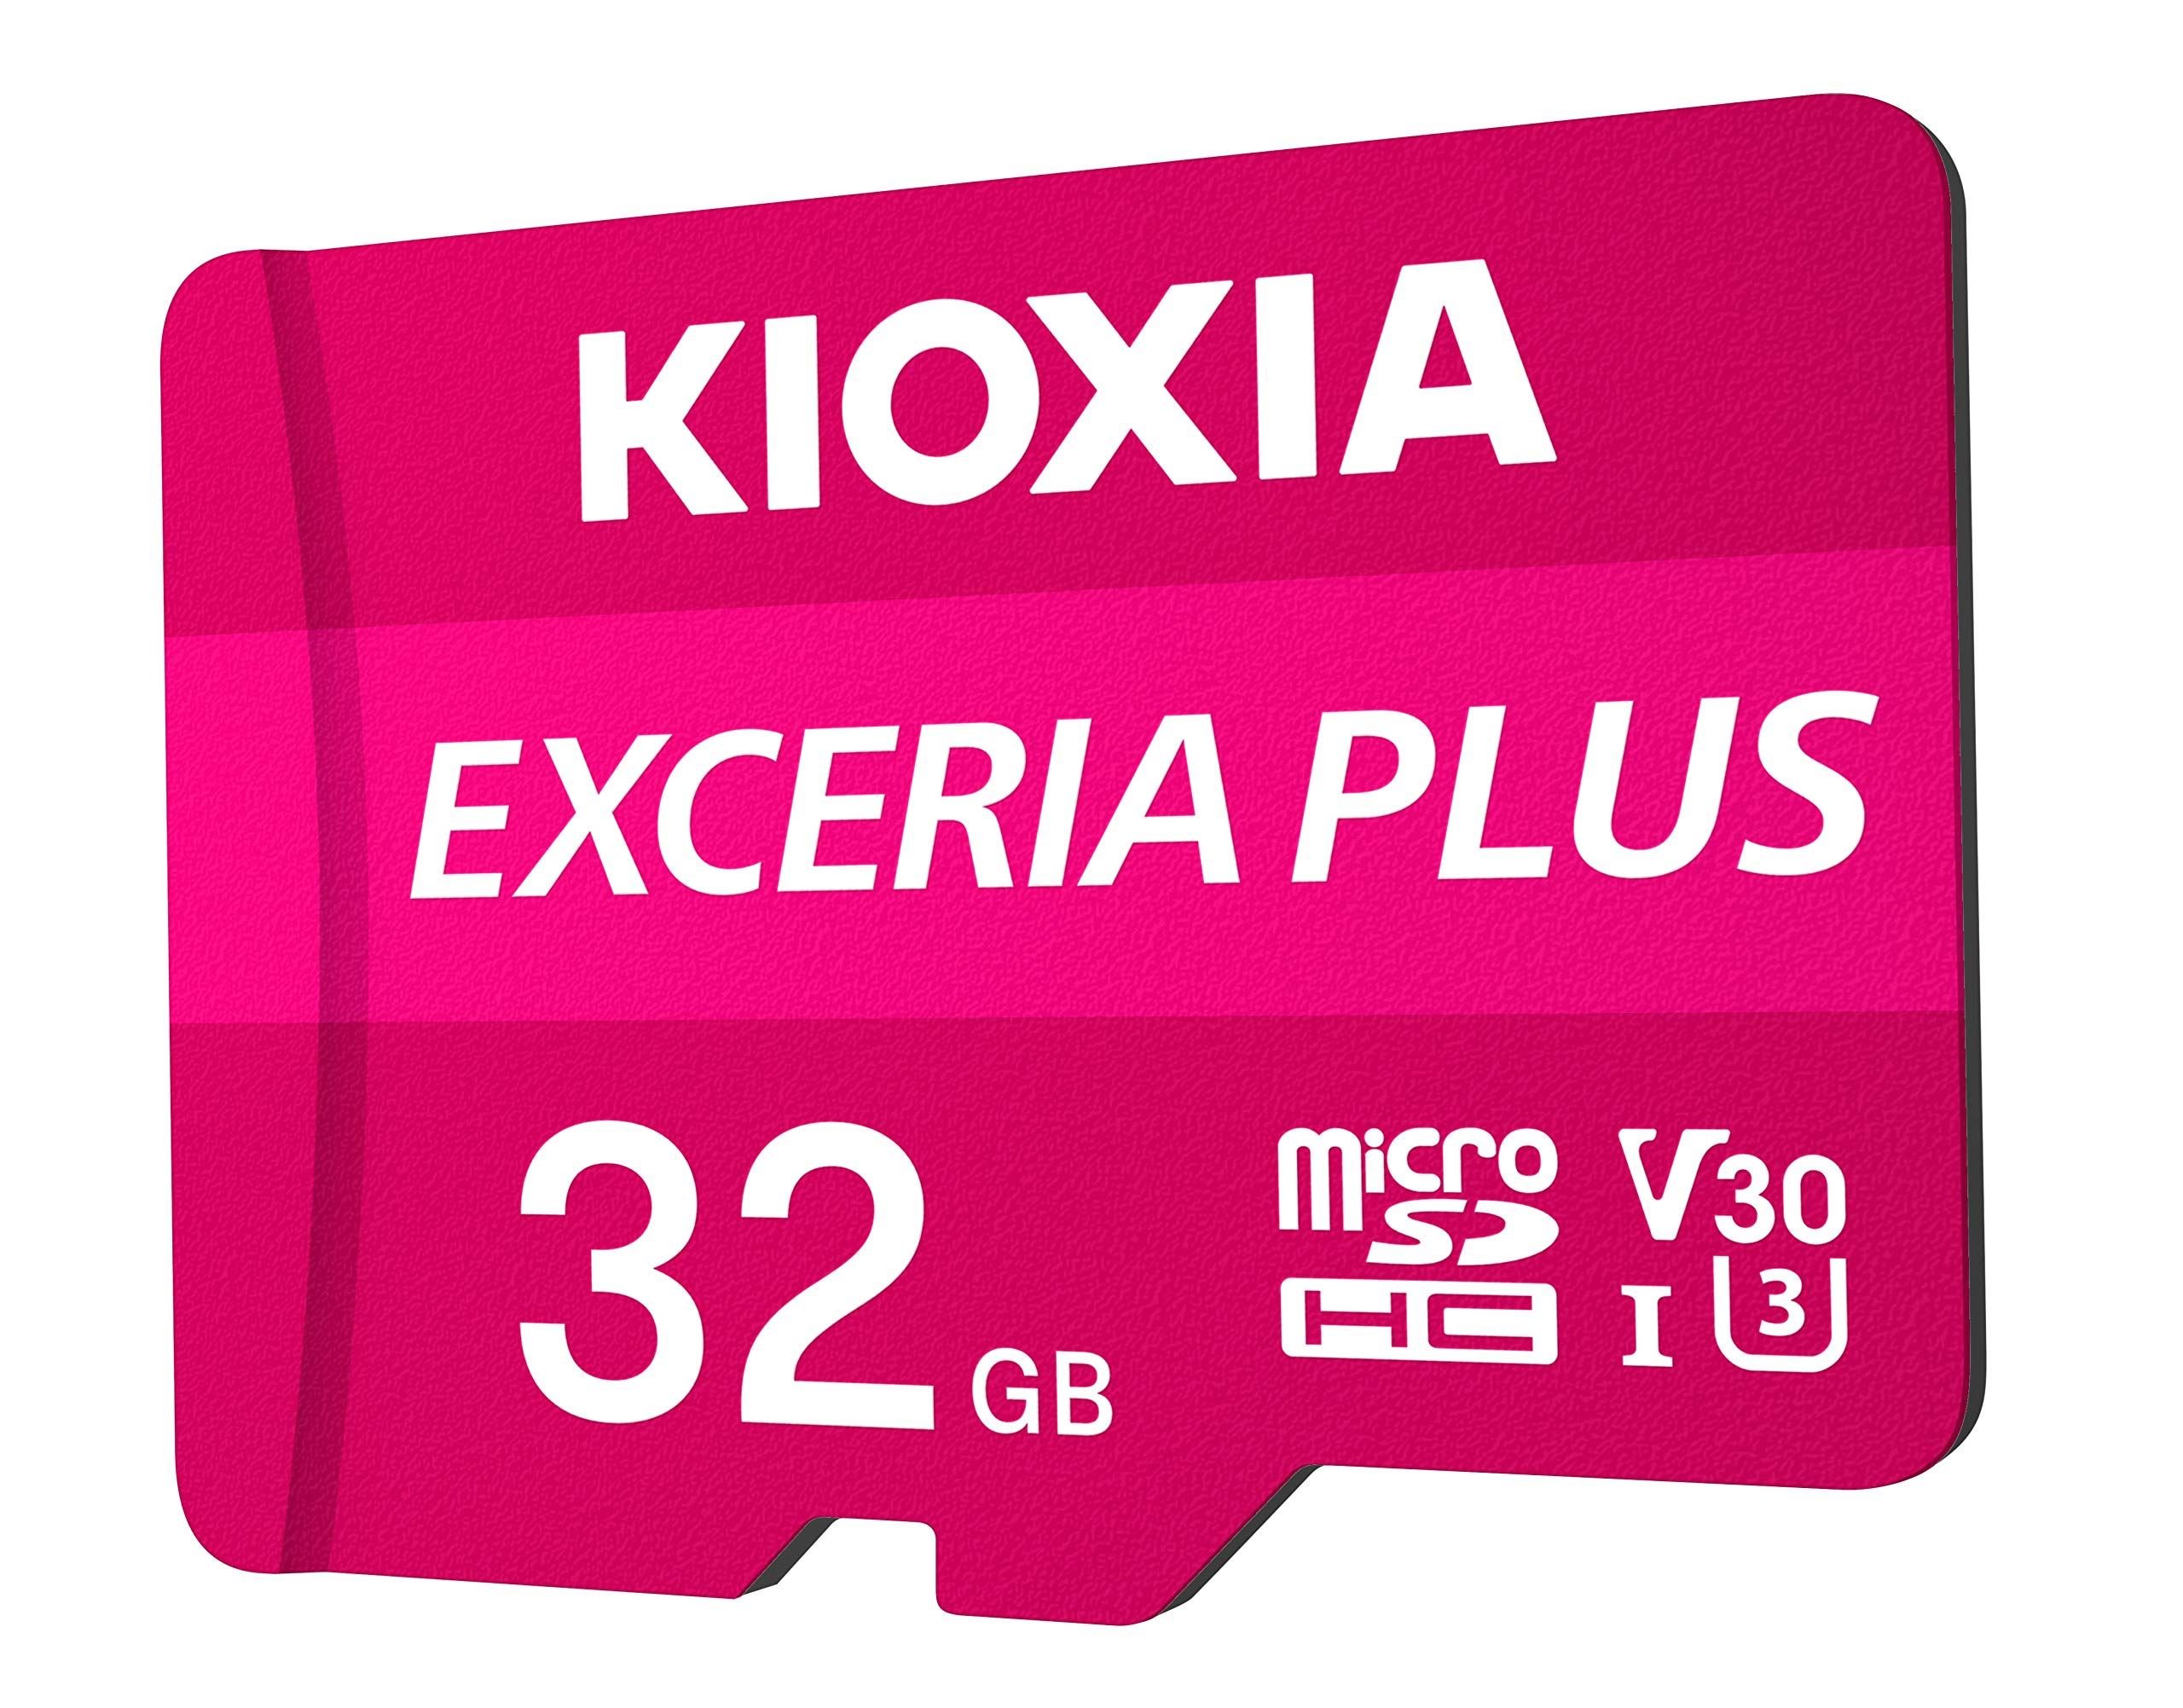 KIOXIA LMPL1M032GG2 FLA 32GB EXCERIA PLUS microSD C10 U3 V30 UHS1 A1